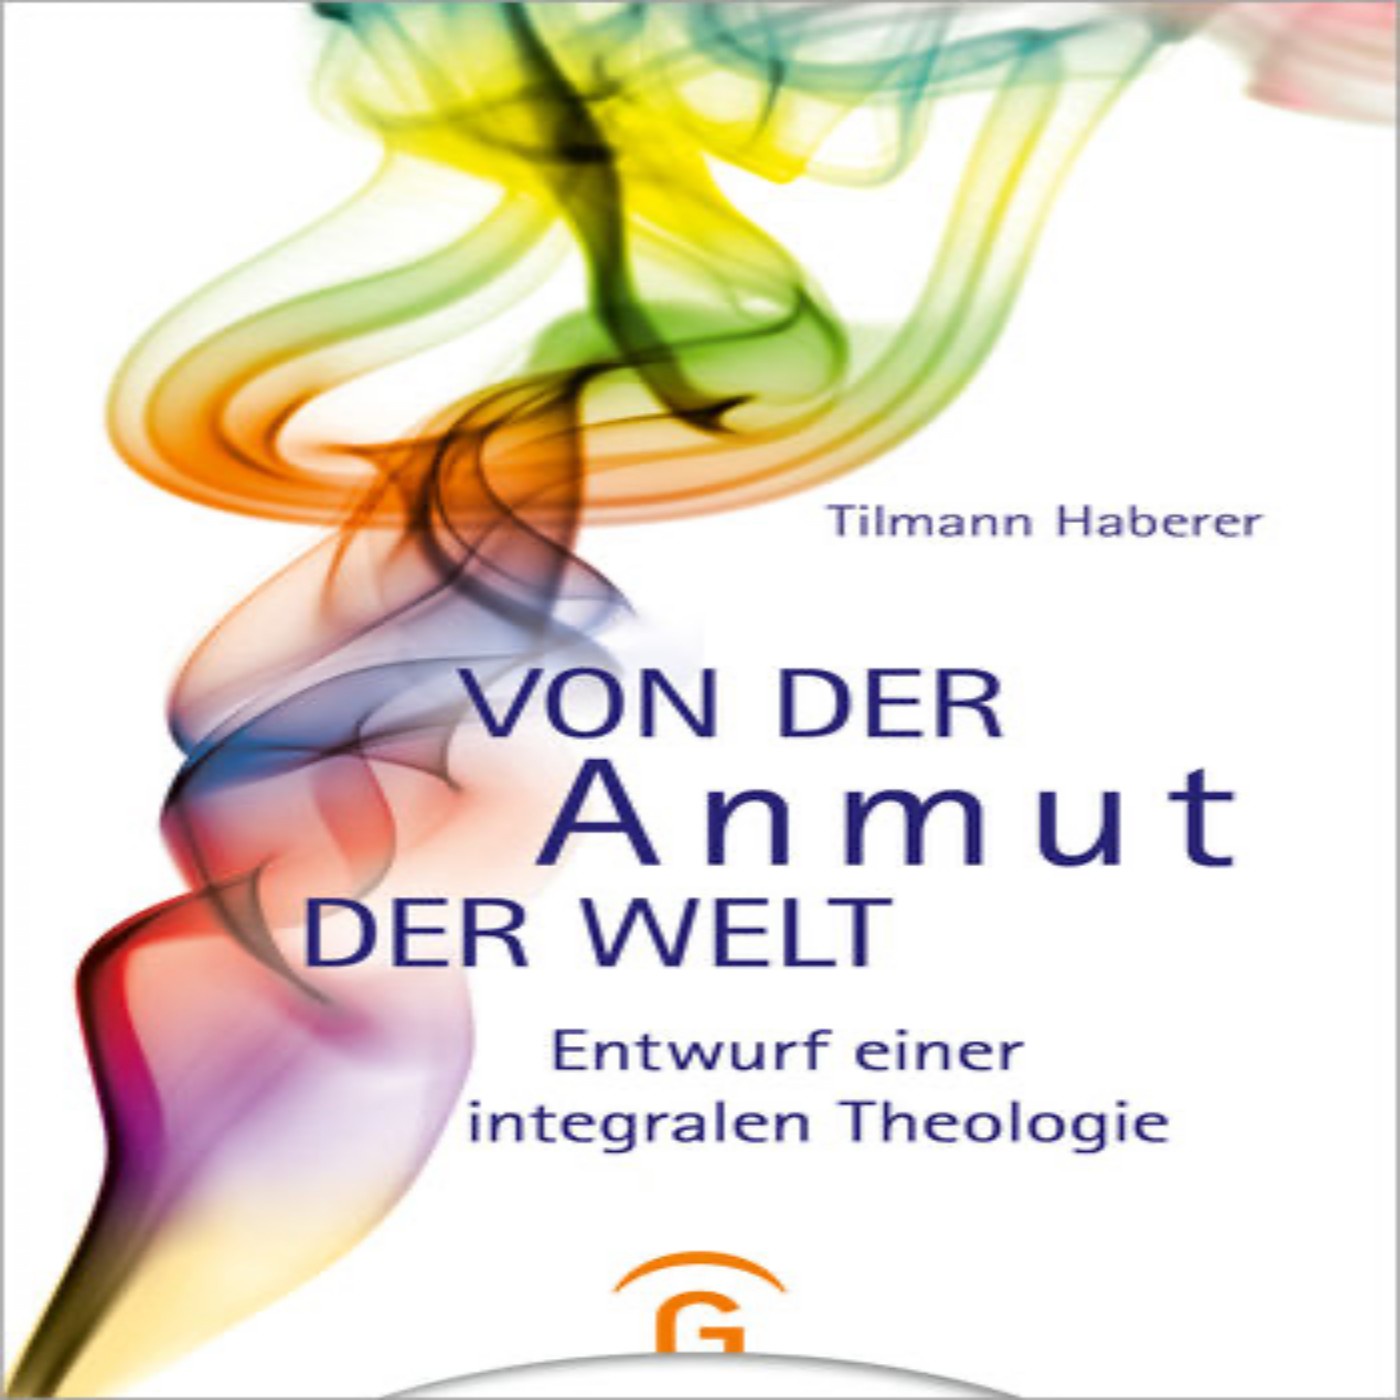 Tilmann Haberer über sein neuestes Buch